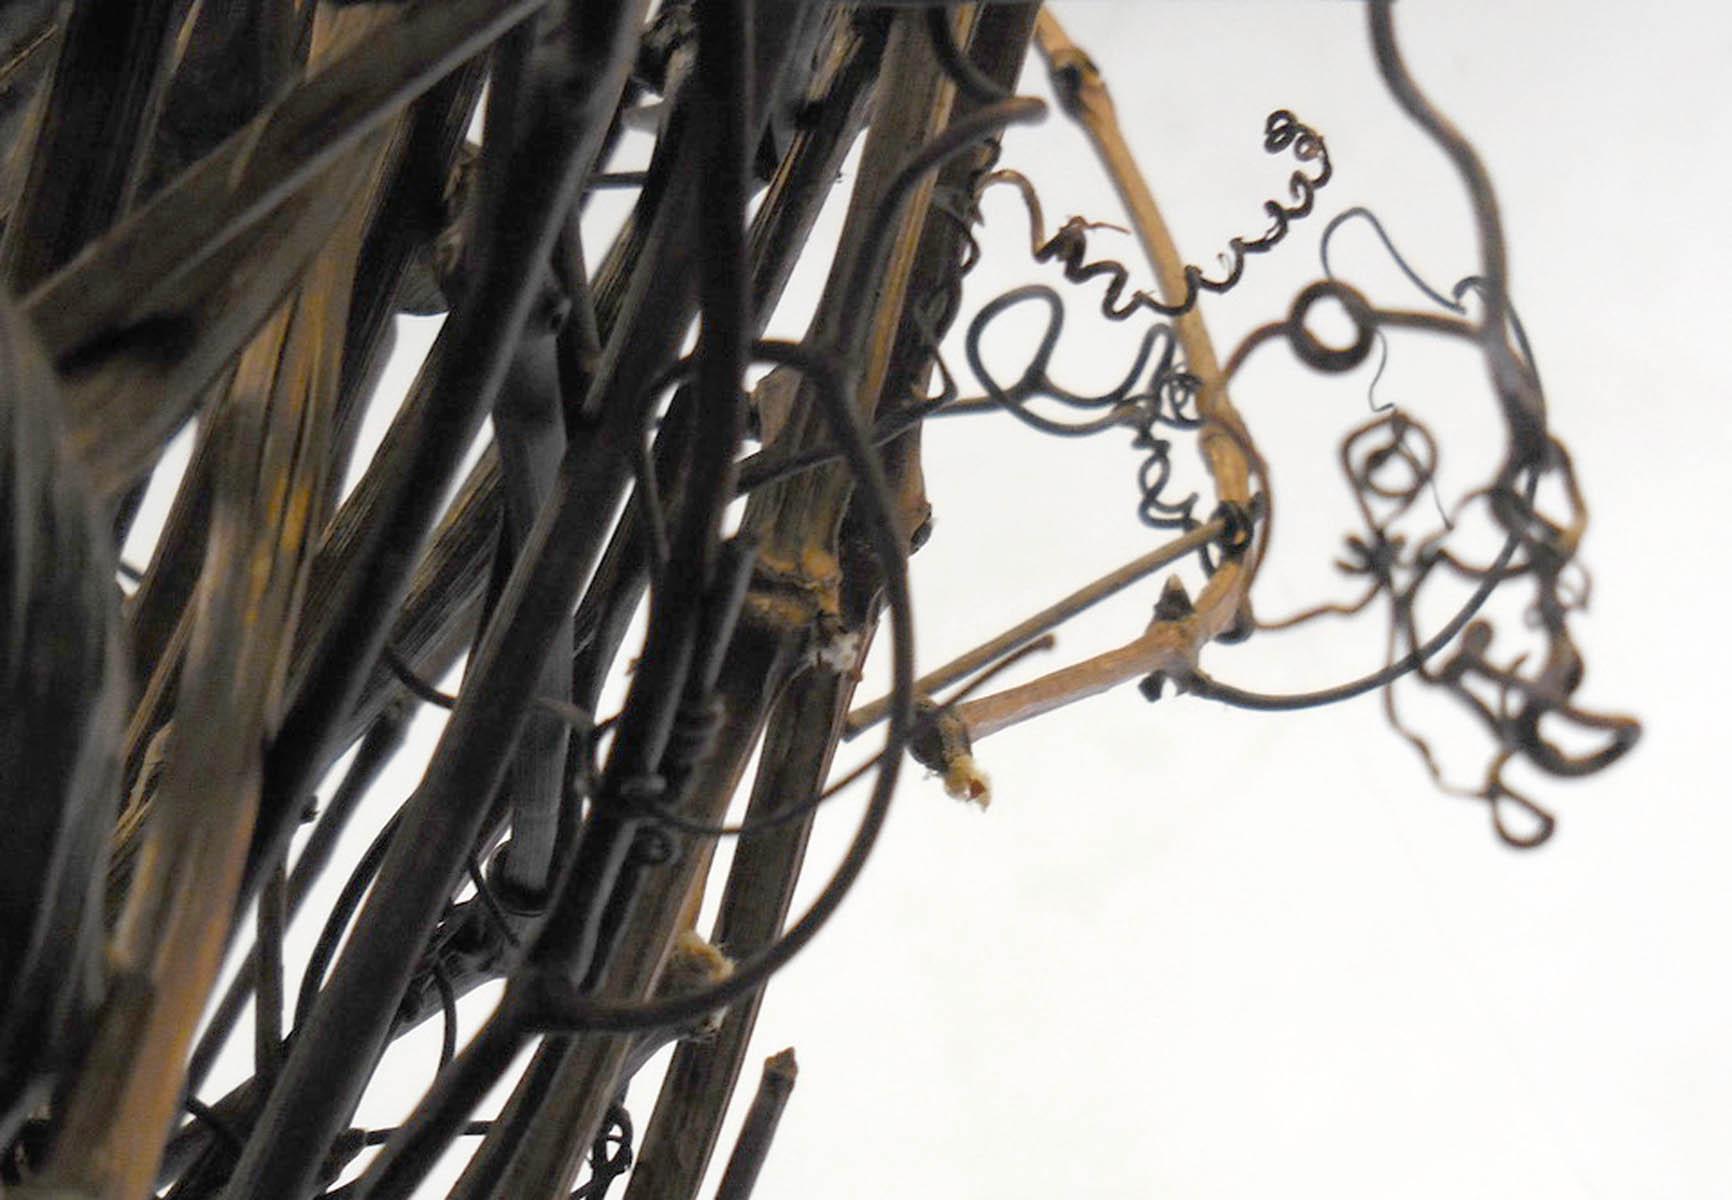 Hand-Woven Gigantic Grapevine Bird's Nest Sculpture